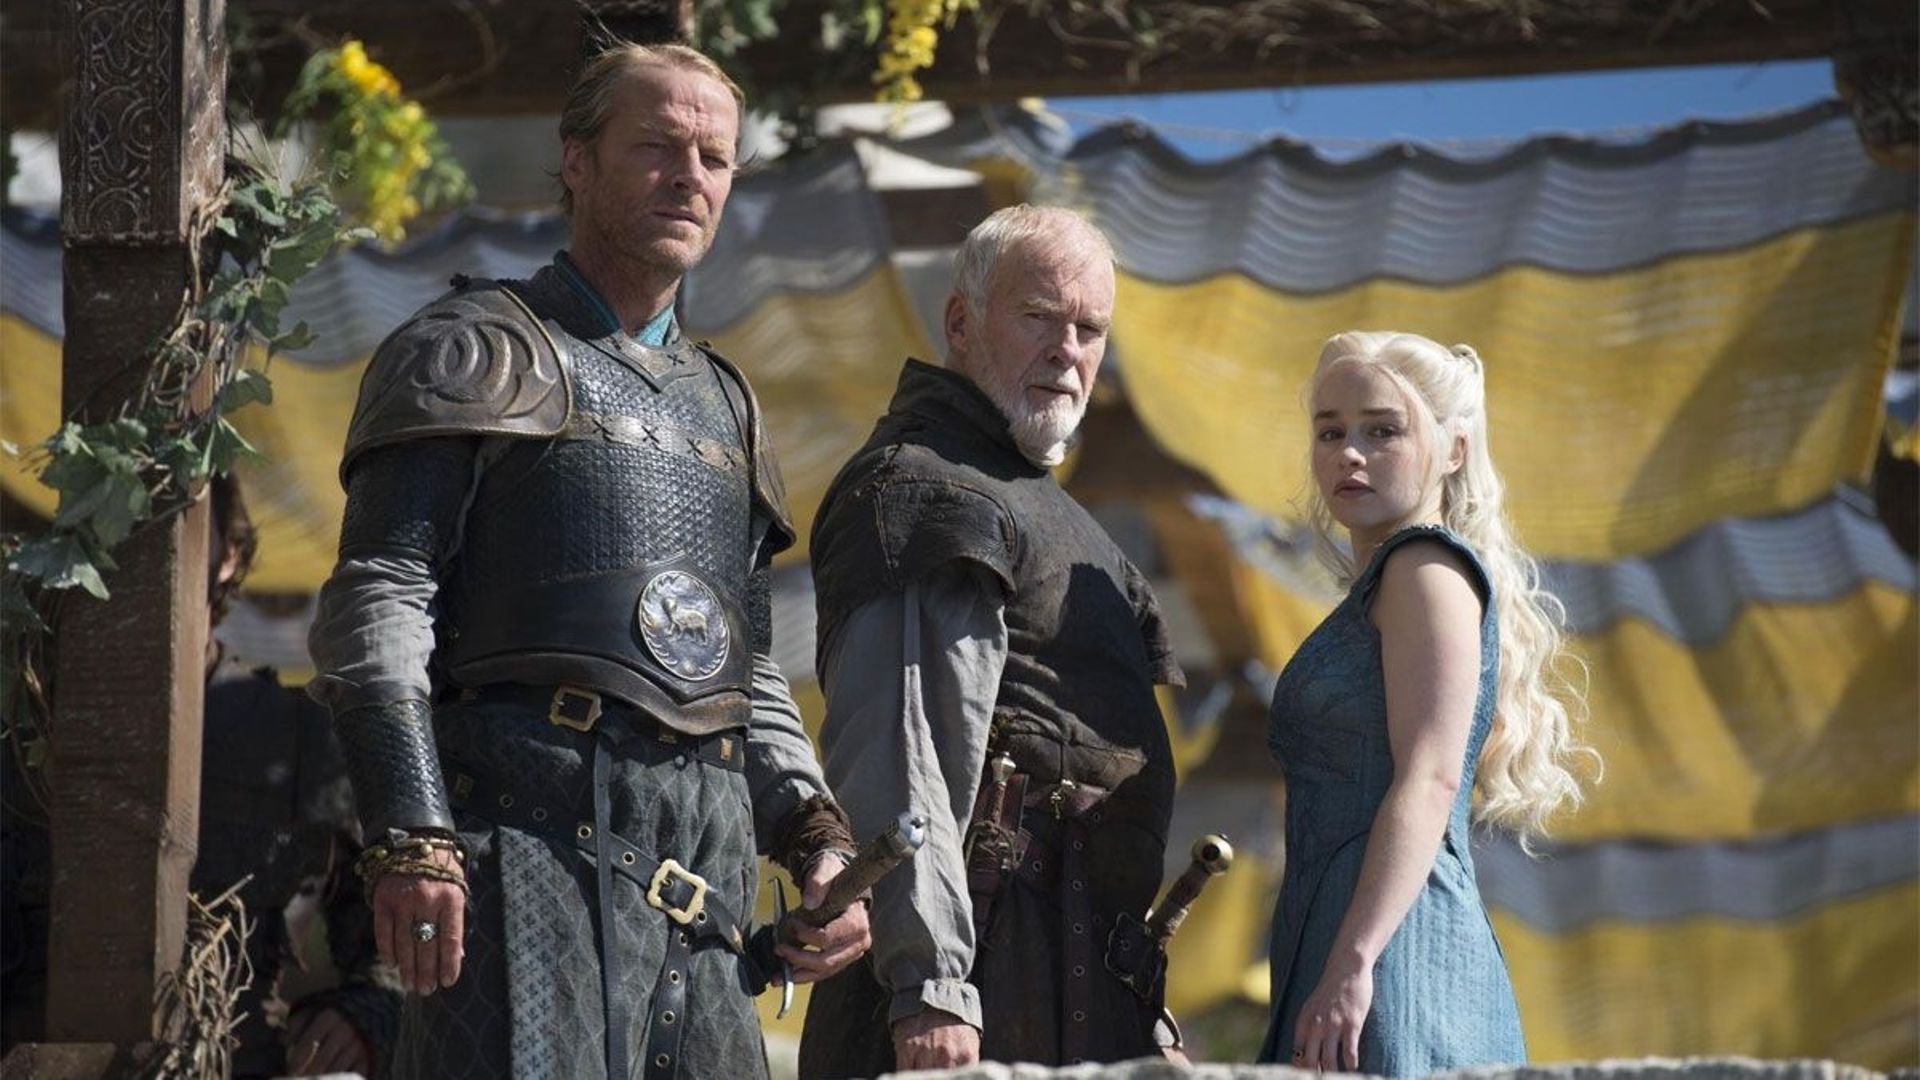 Le tournage de la saison 5 de "Game of Thrones" commencera début août